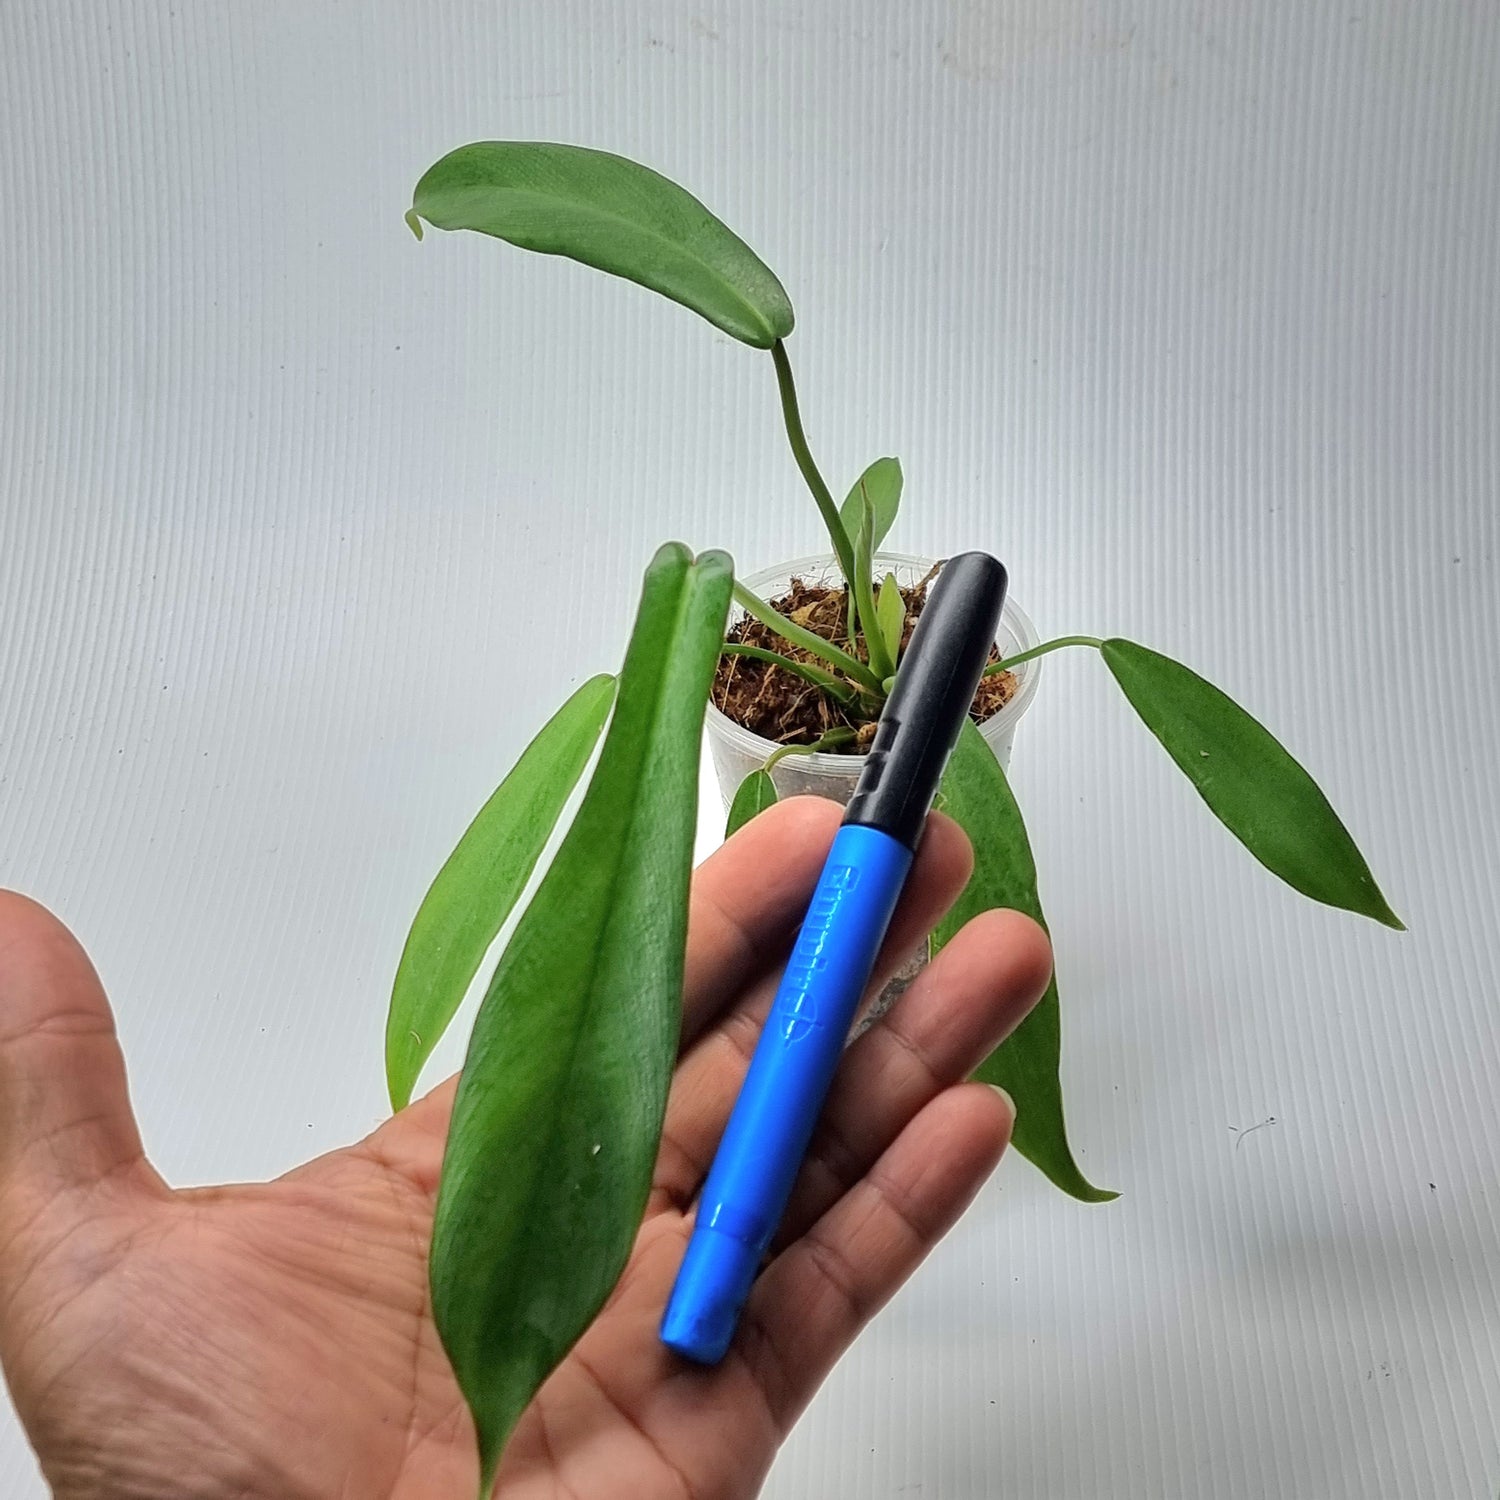 rare Philodendron joepii (TC) for sale in Perth Australia